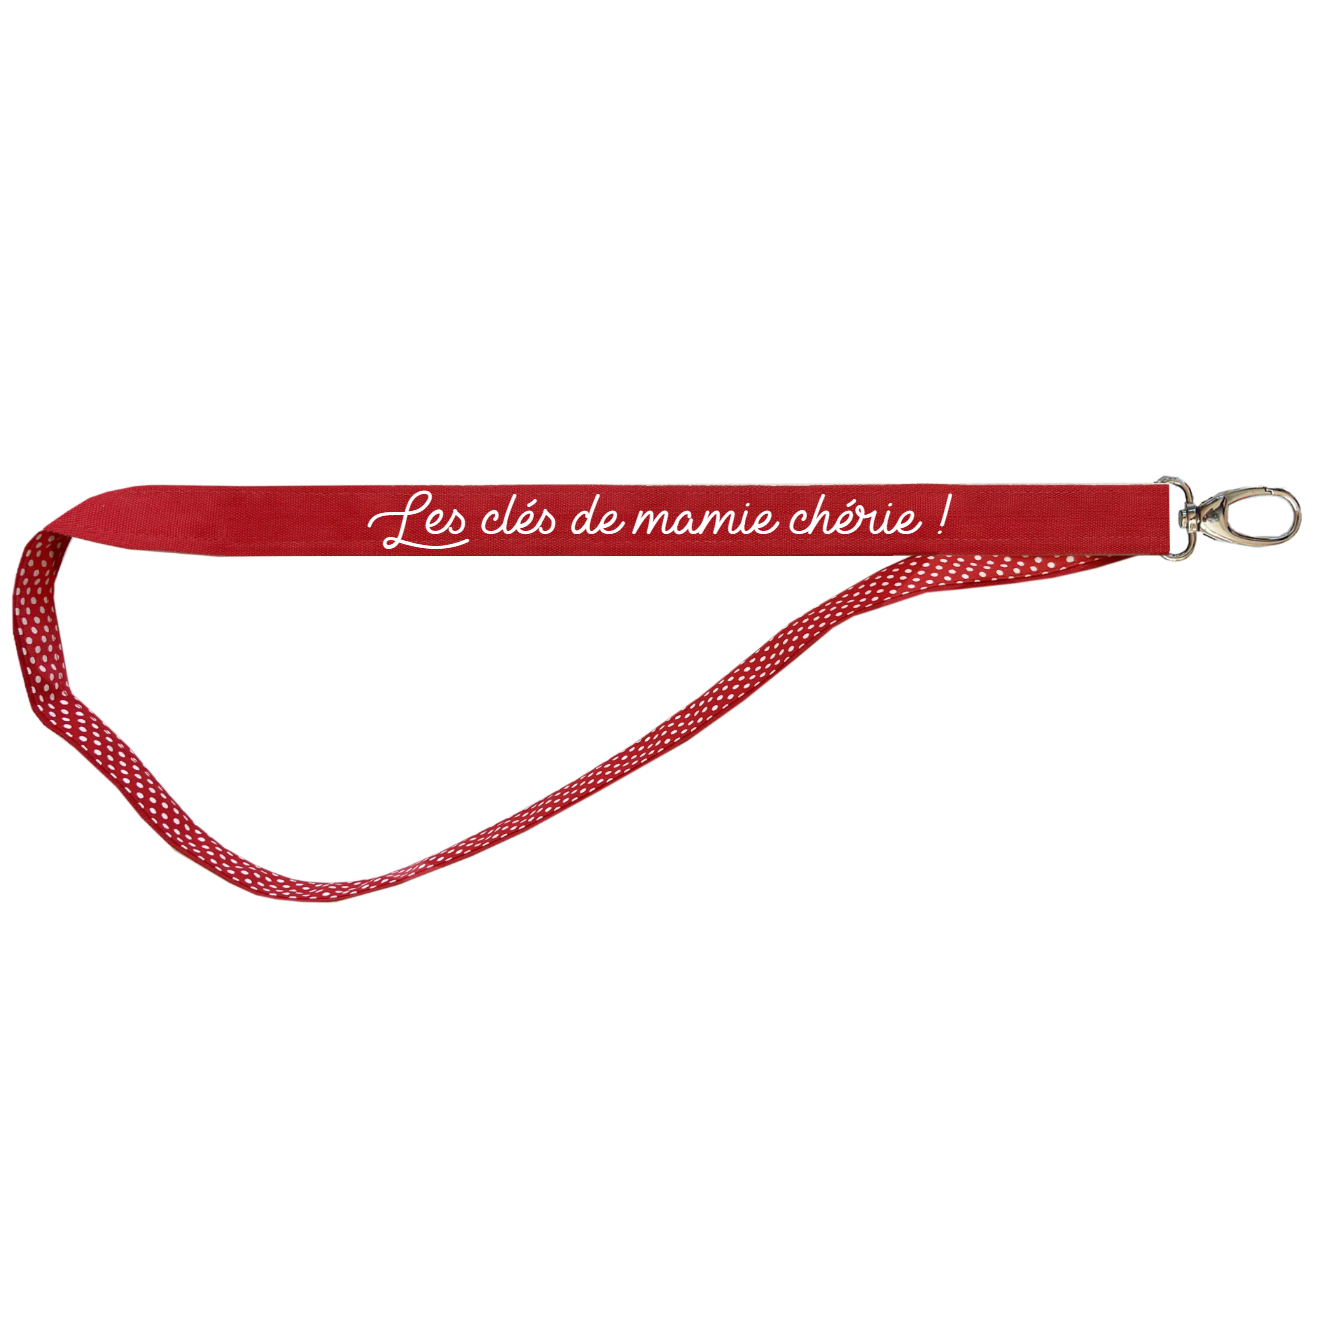 Porte clés Long Cadeau Fête des Mères / Grand-mères personnalisé Rouge pois rouge